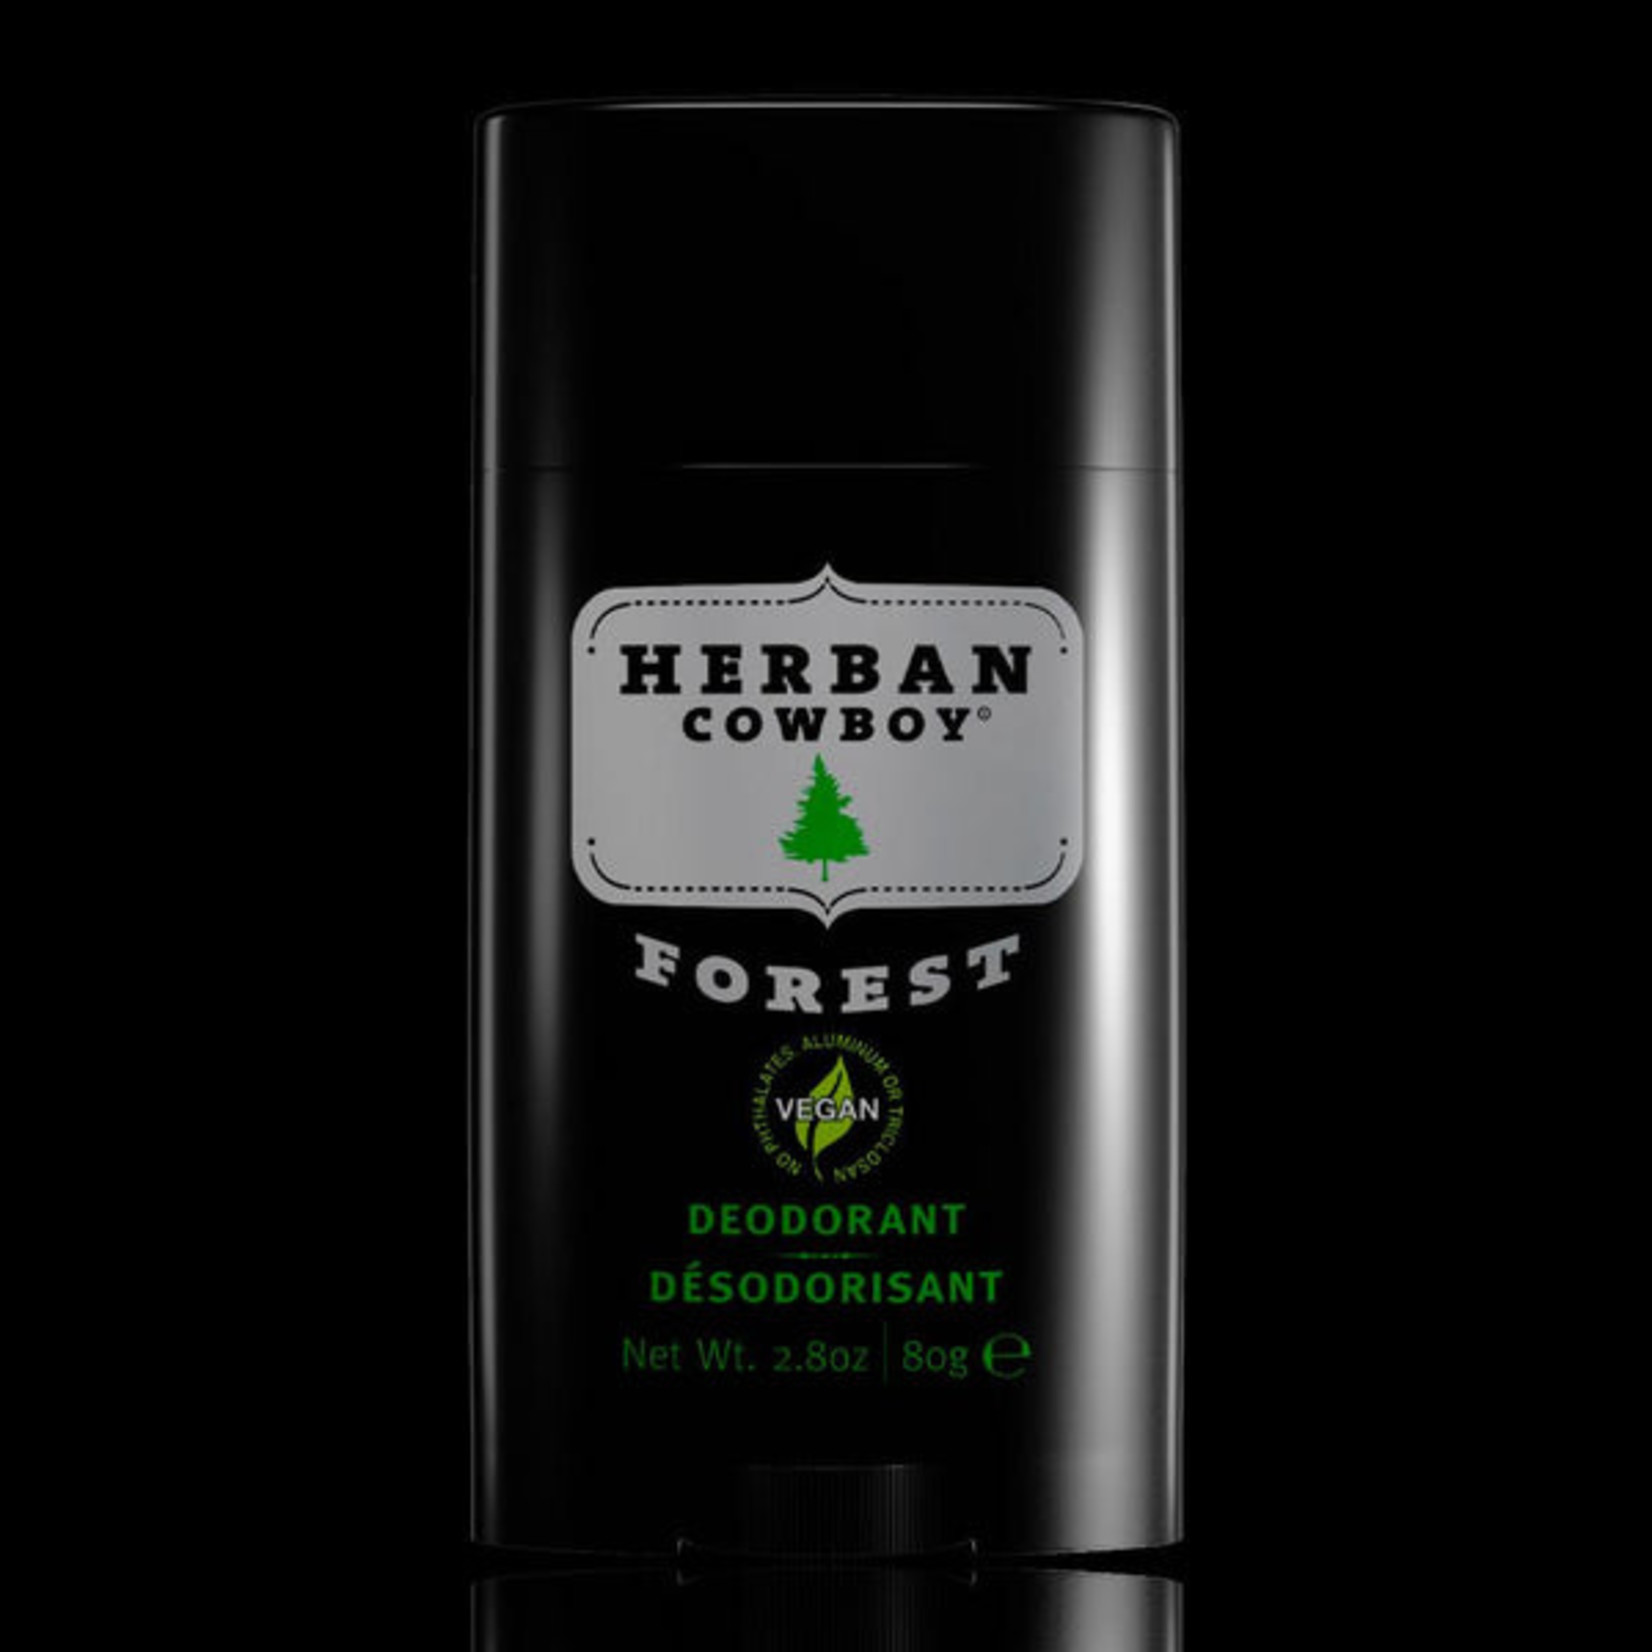 Herban Cowboy Herban Cowboy - Deodorant Forest - 2.8 oz